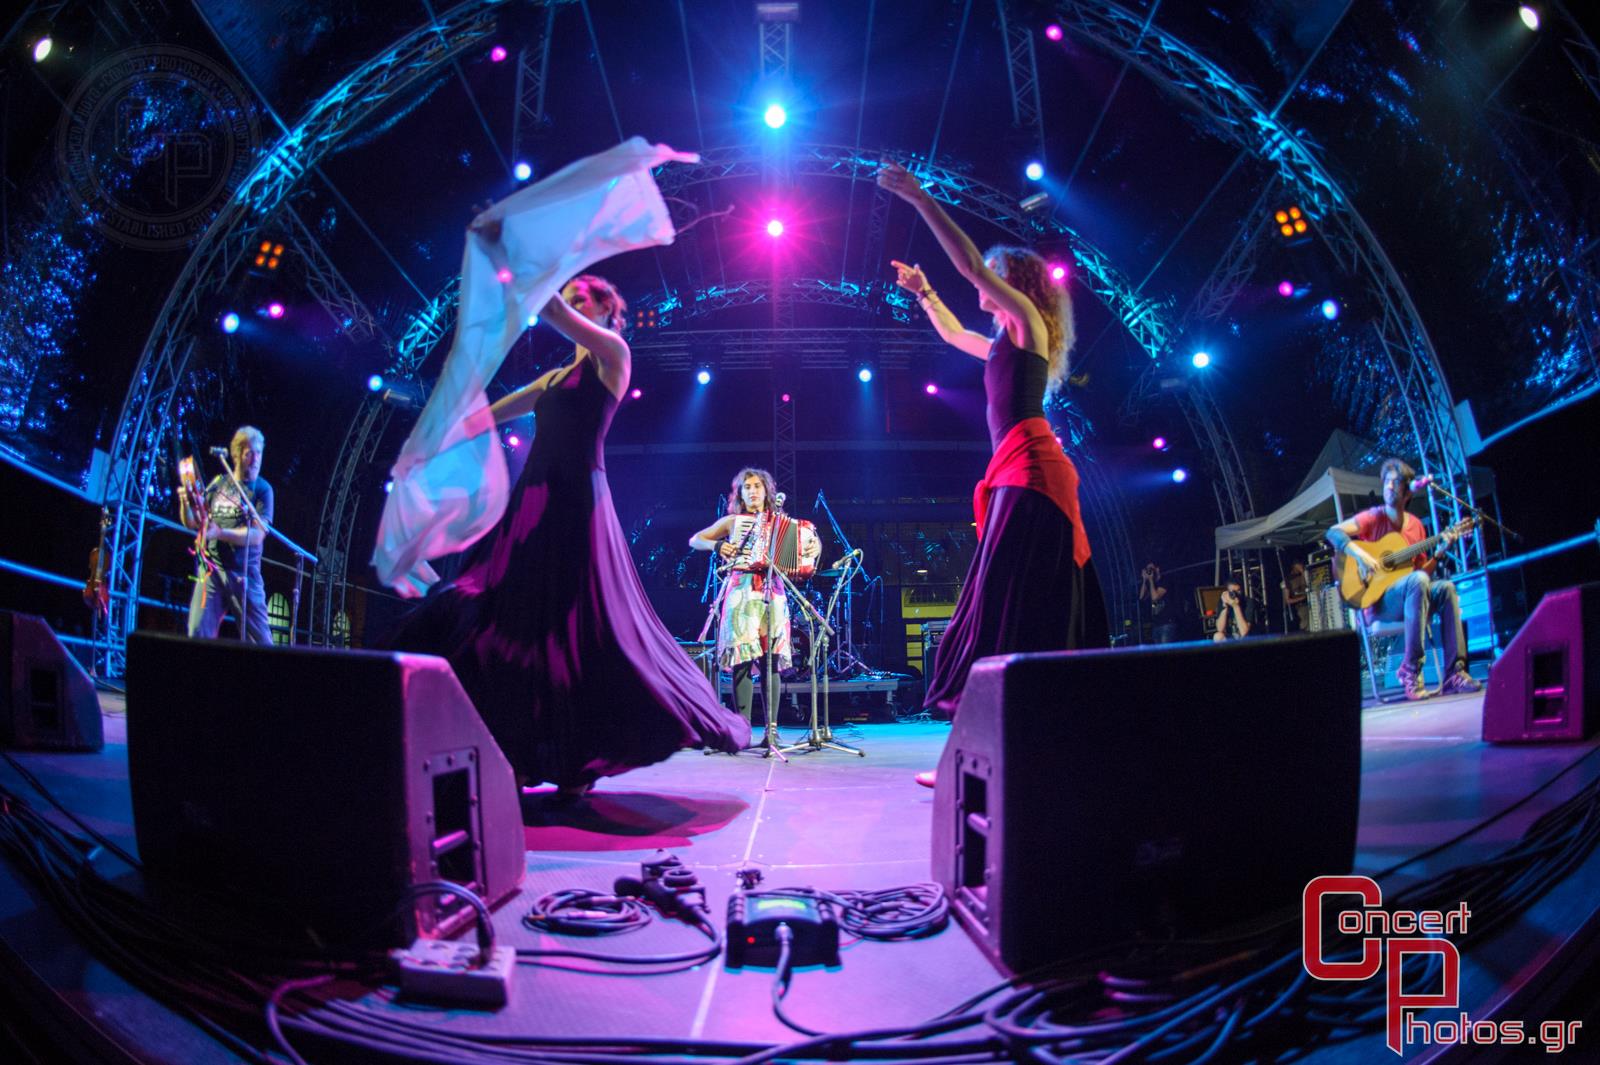 Μία συναυλία για τη Σχεδία 2014-Sxedia 2014 photographer:  - concertphotos_20140526_21_50_29